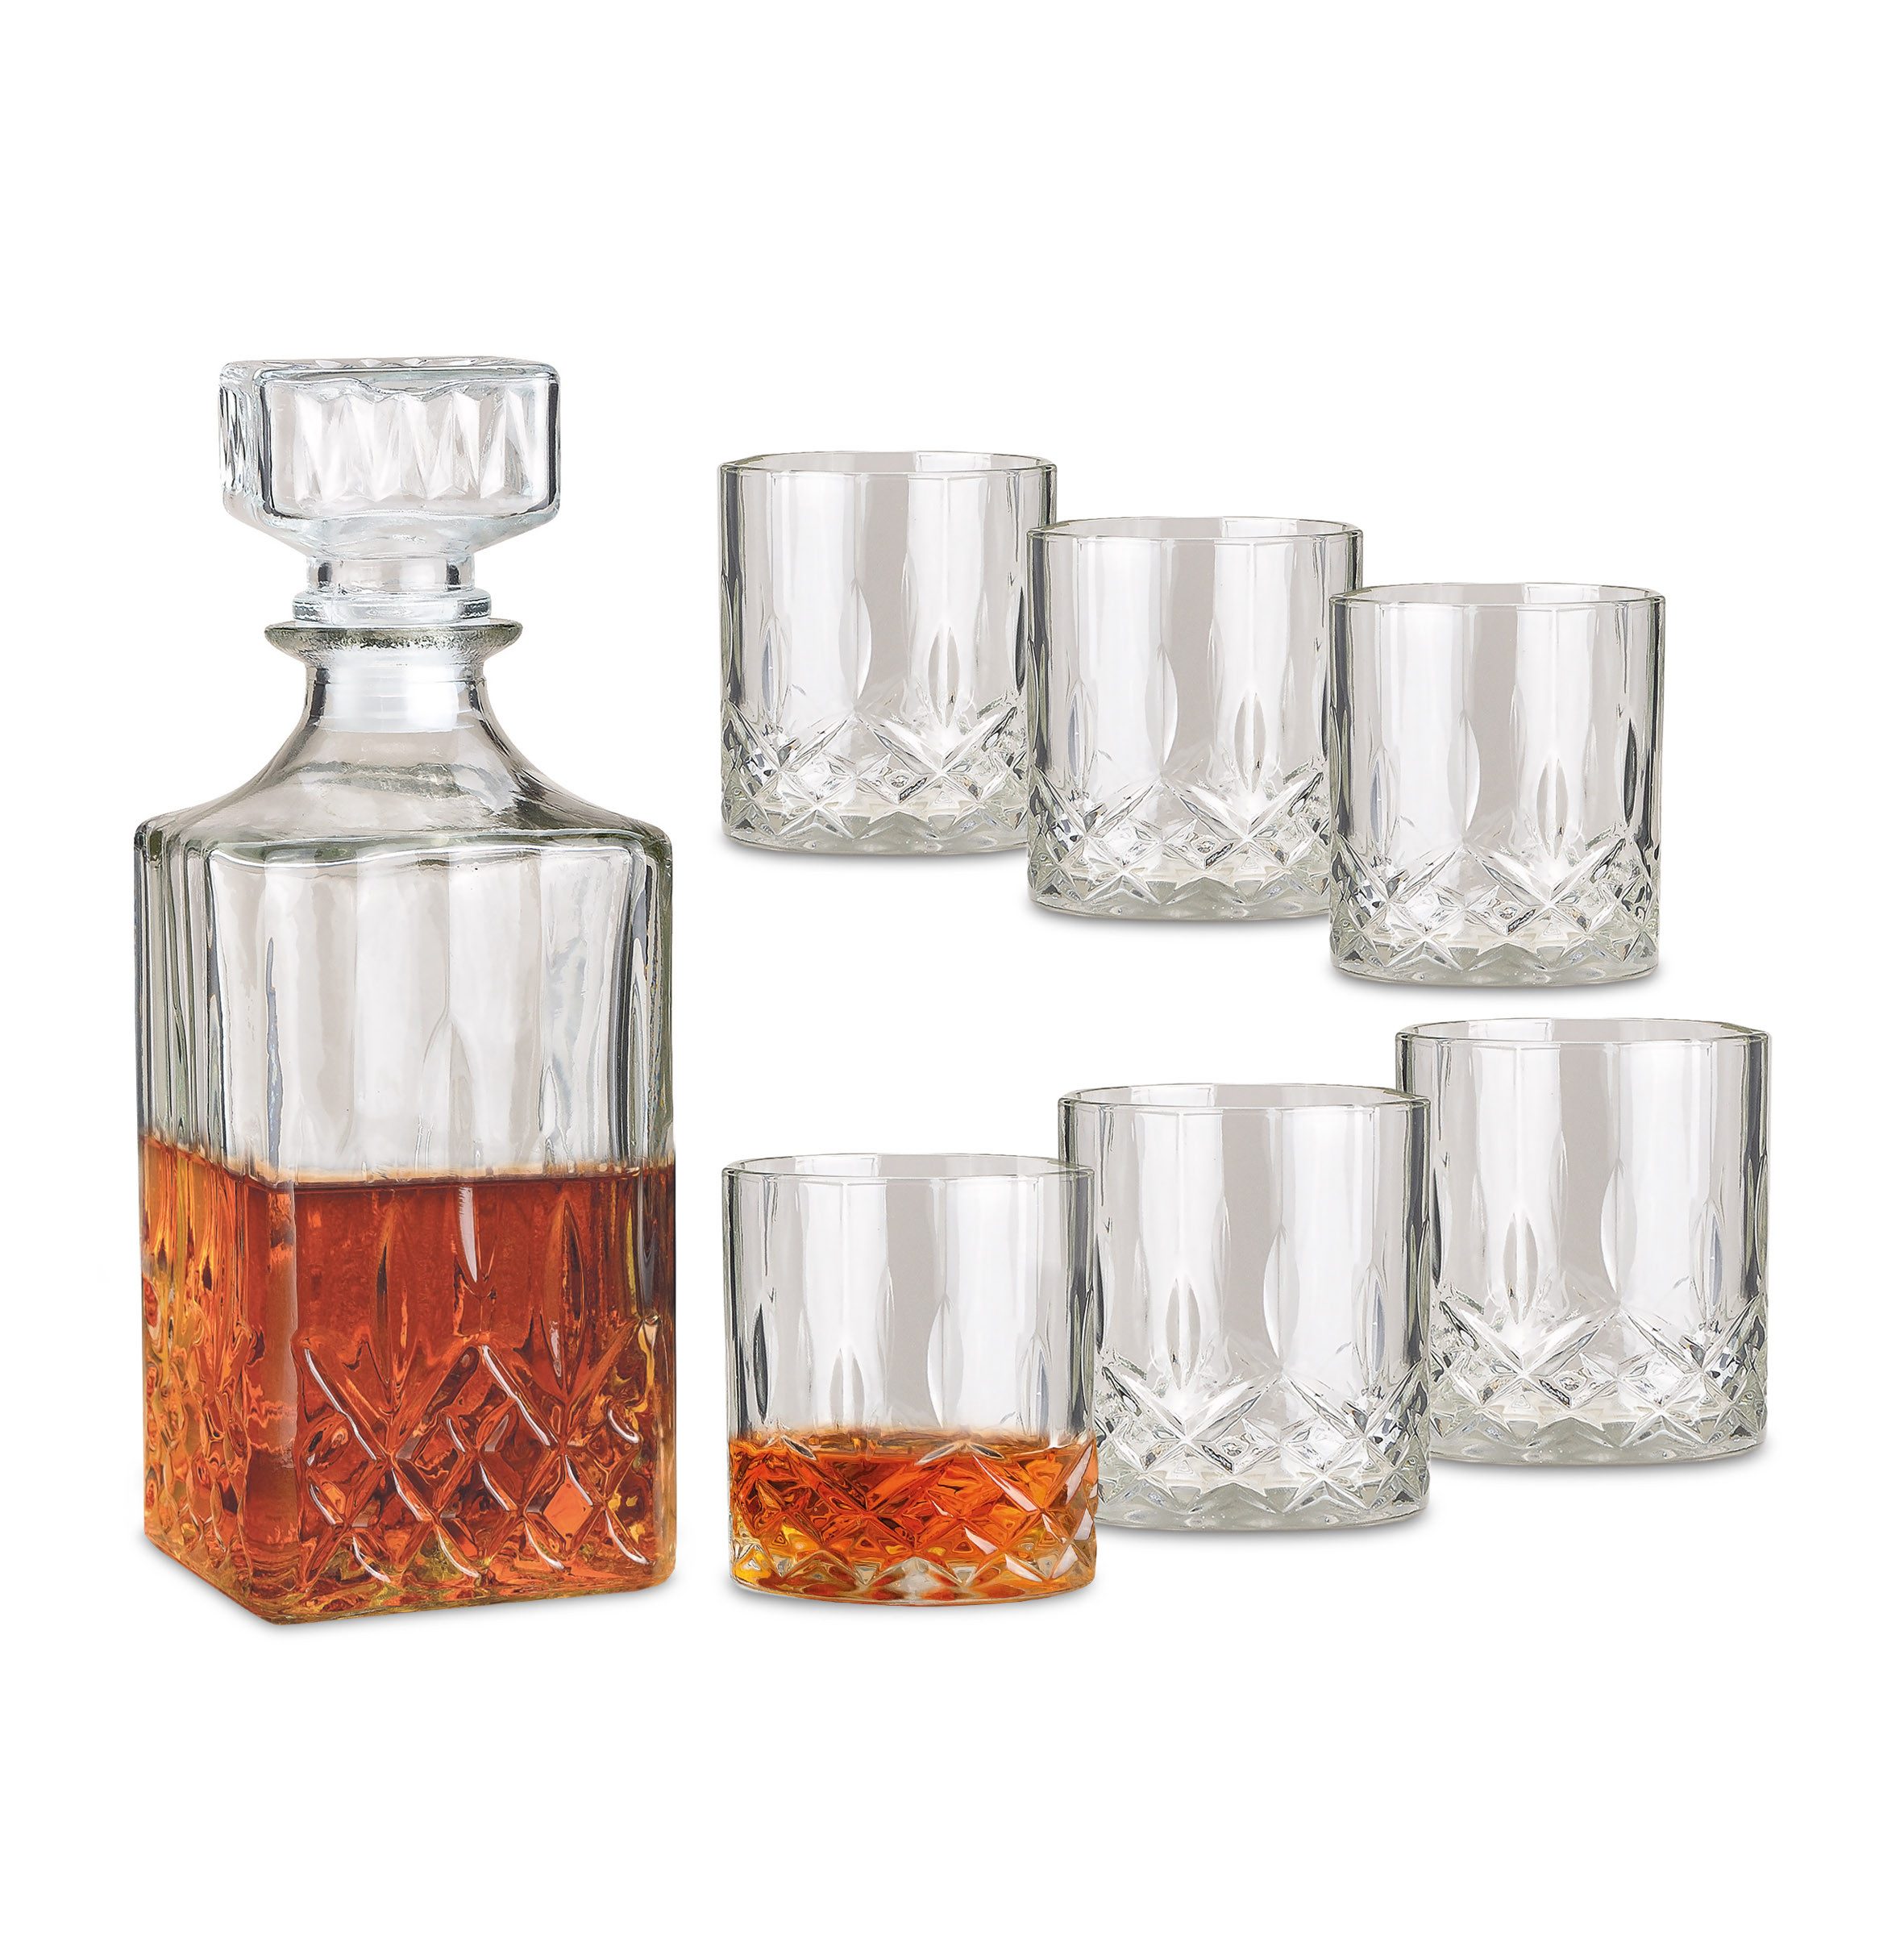 Woma Whiskyglas Whisky Glas Geschenk Set aus Kristallglas - 6 Gläser + 1 Karaffe, Kristallglas, Rum Dekanter mit Trinkglas